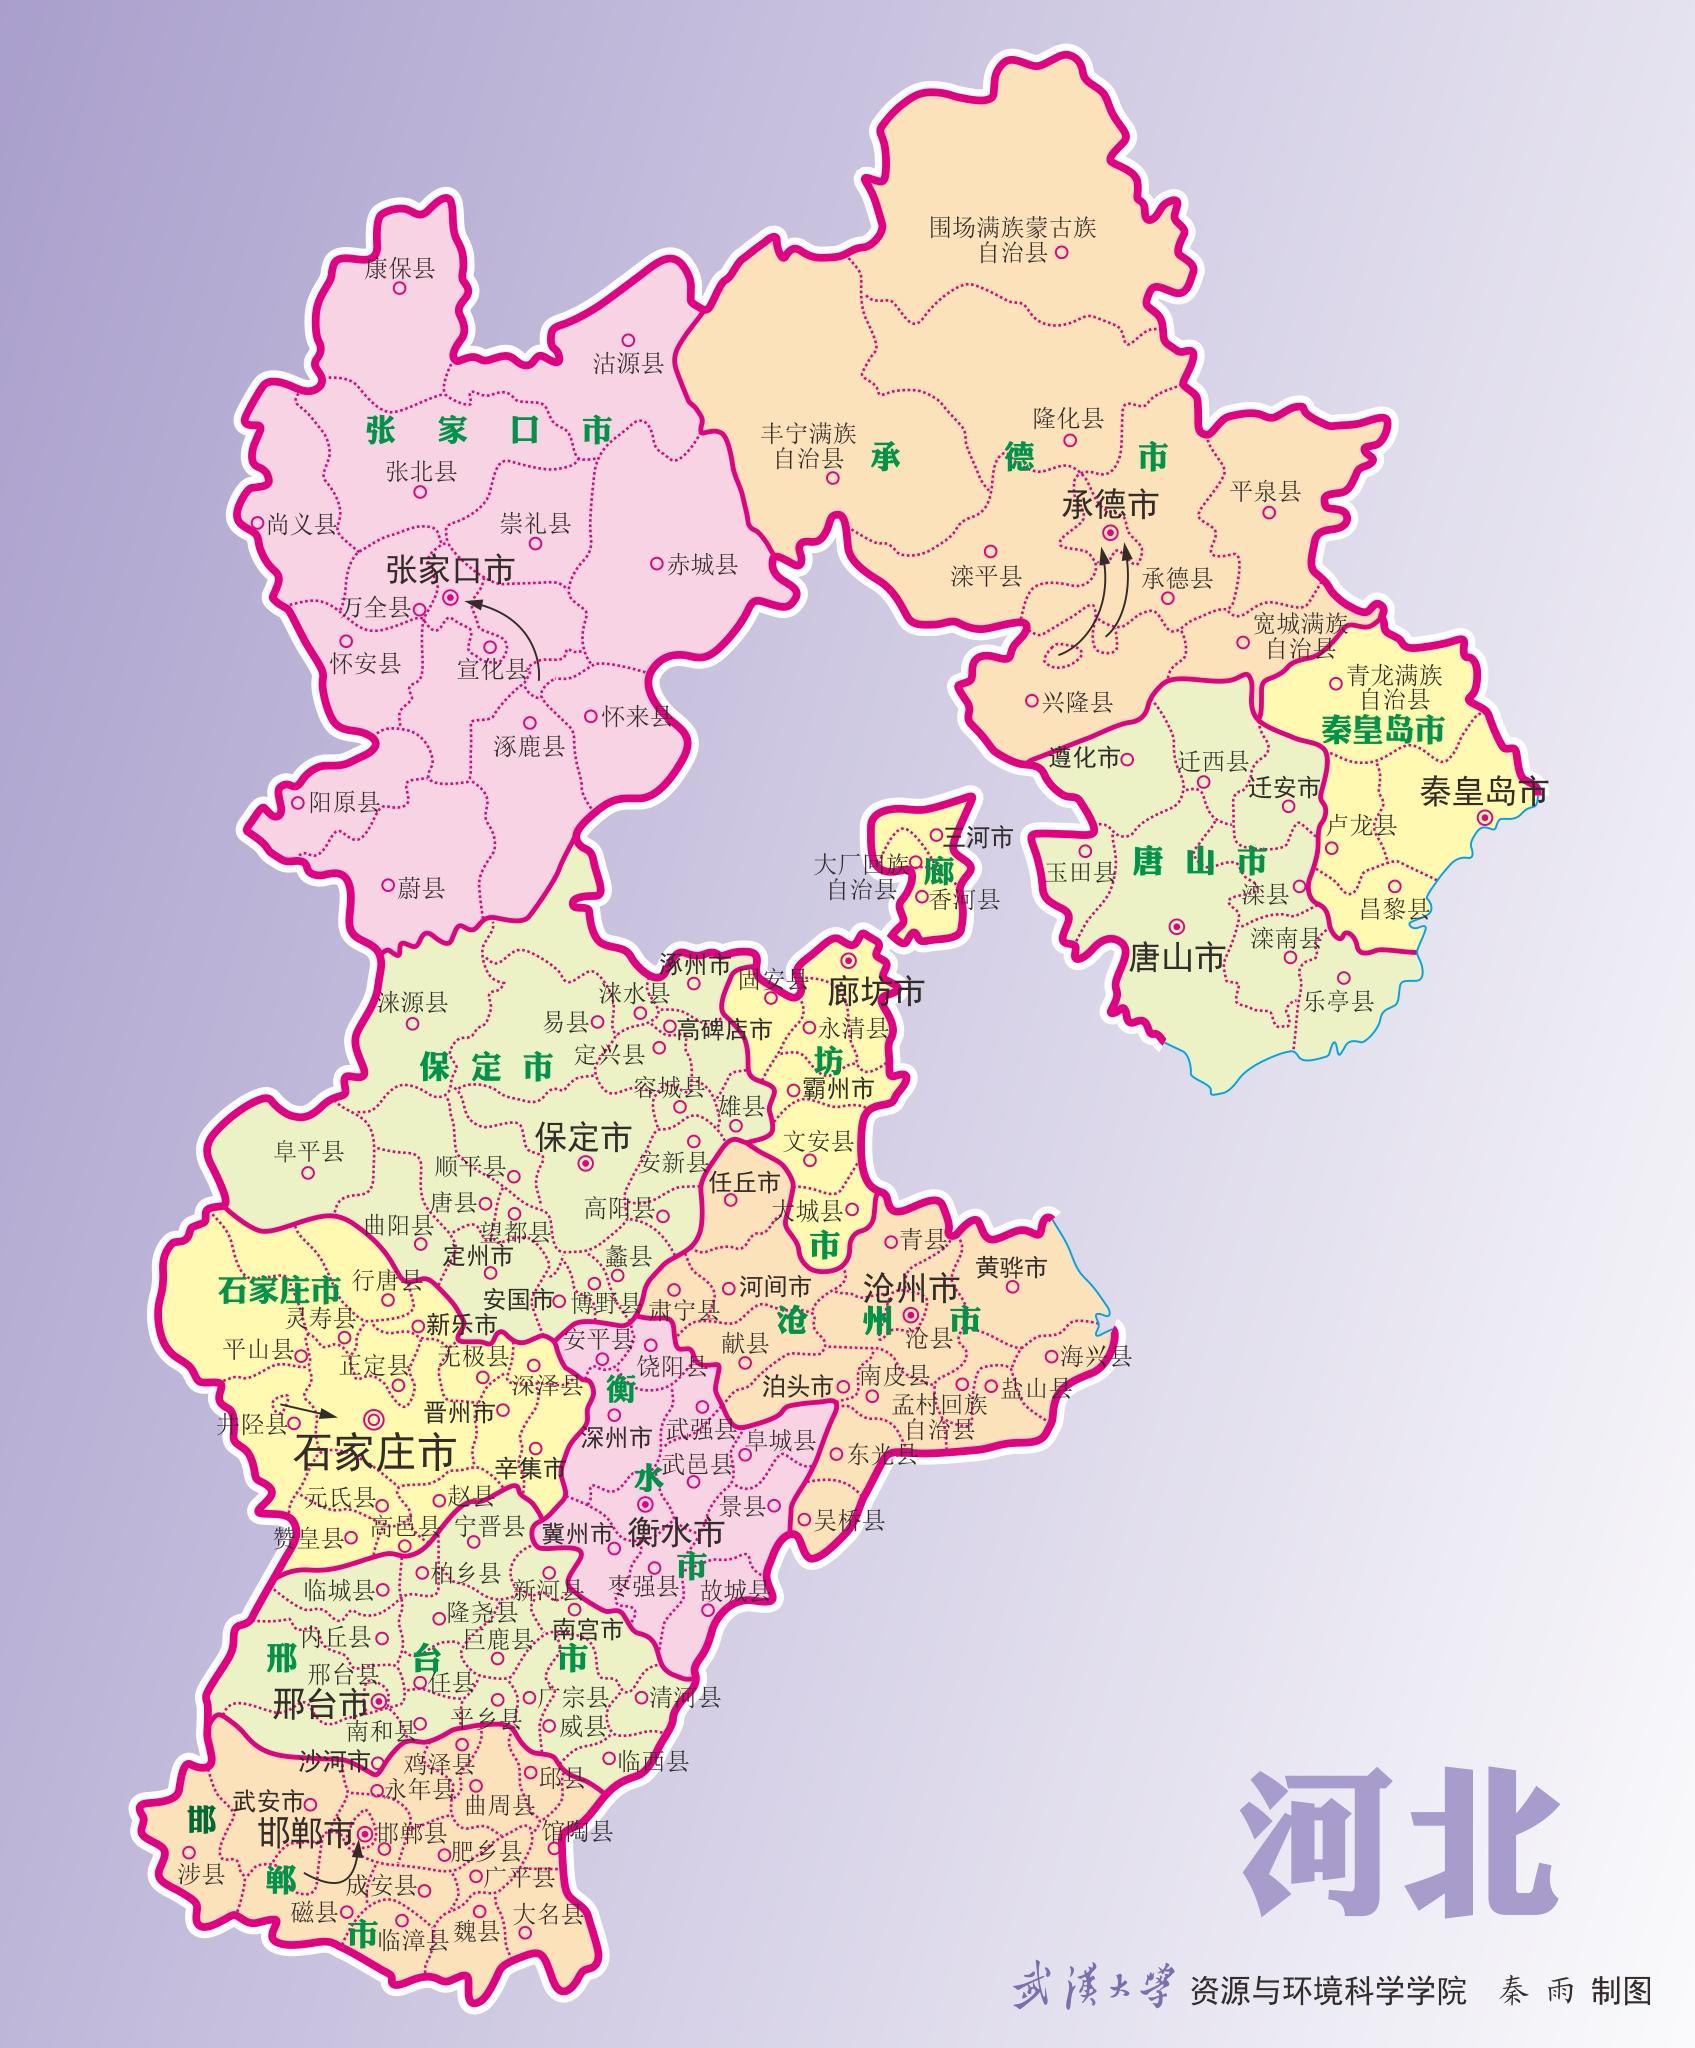 全部版本 历史版本     河北省隶属中国,简称"   冀",河北省环抱首都